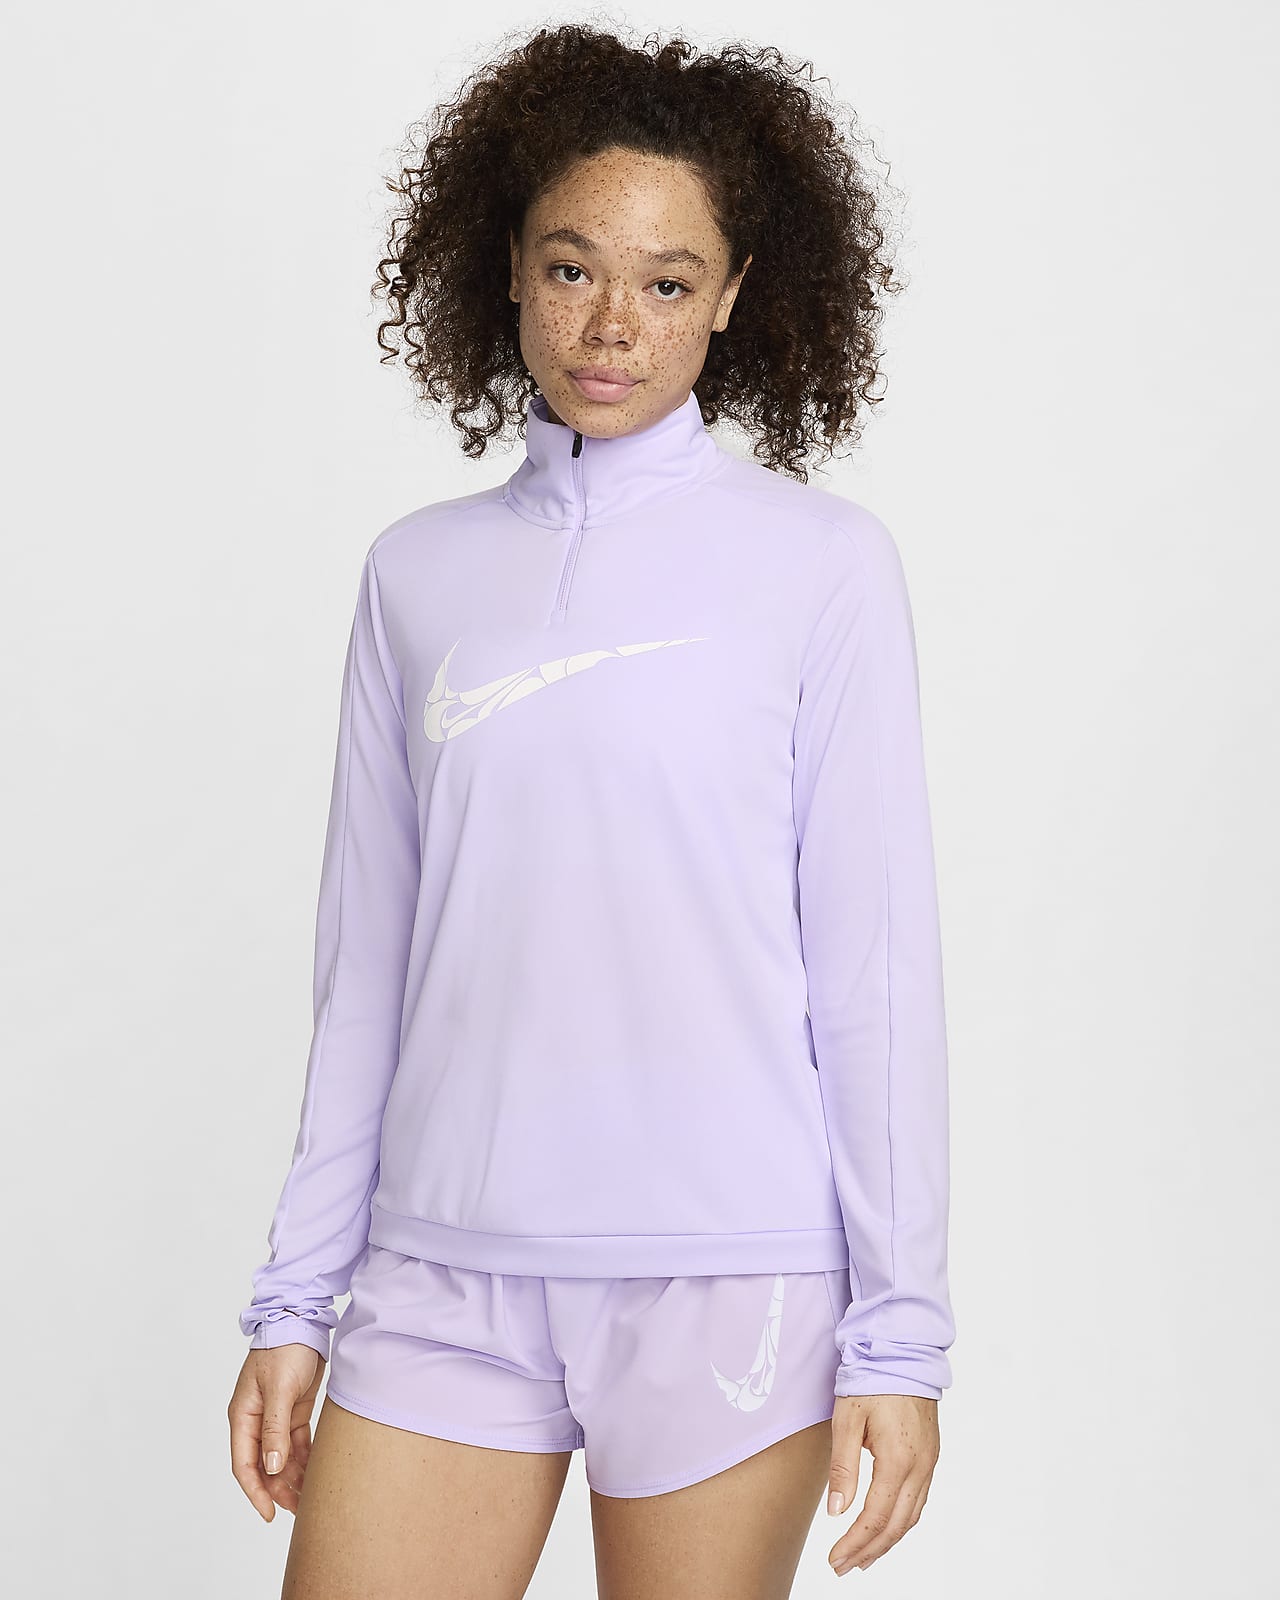 Γυναικεία ενδιάμεση μπλούζα Dri-FIT με φερμουάρ στο 1/4 του μήκους Nike Swoosh